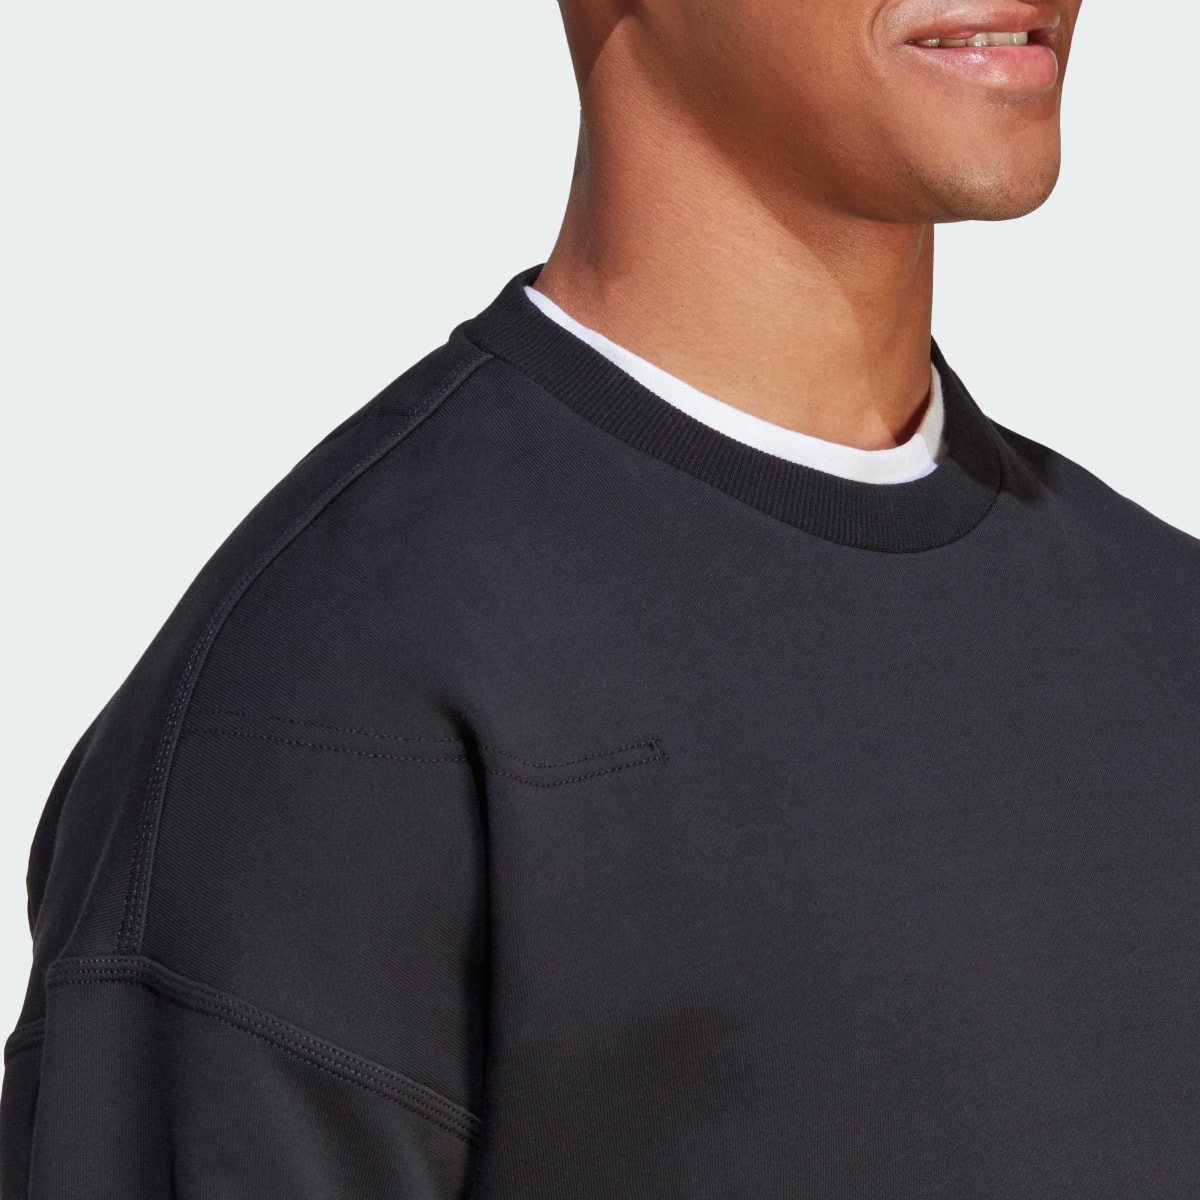 Adidas Lounge Fleece Sweatshirt. 9